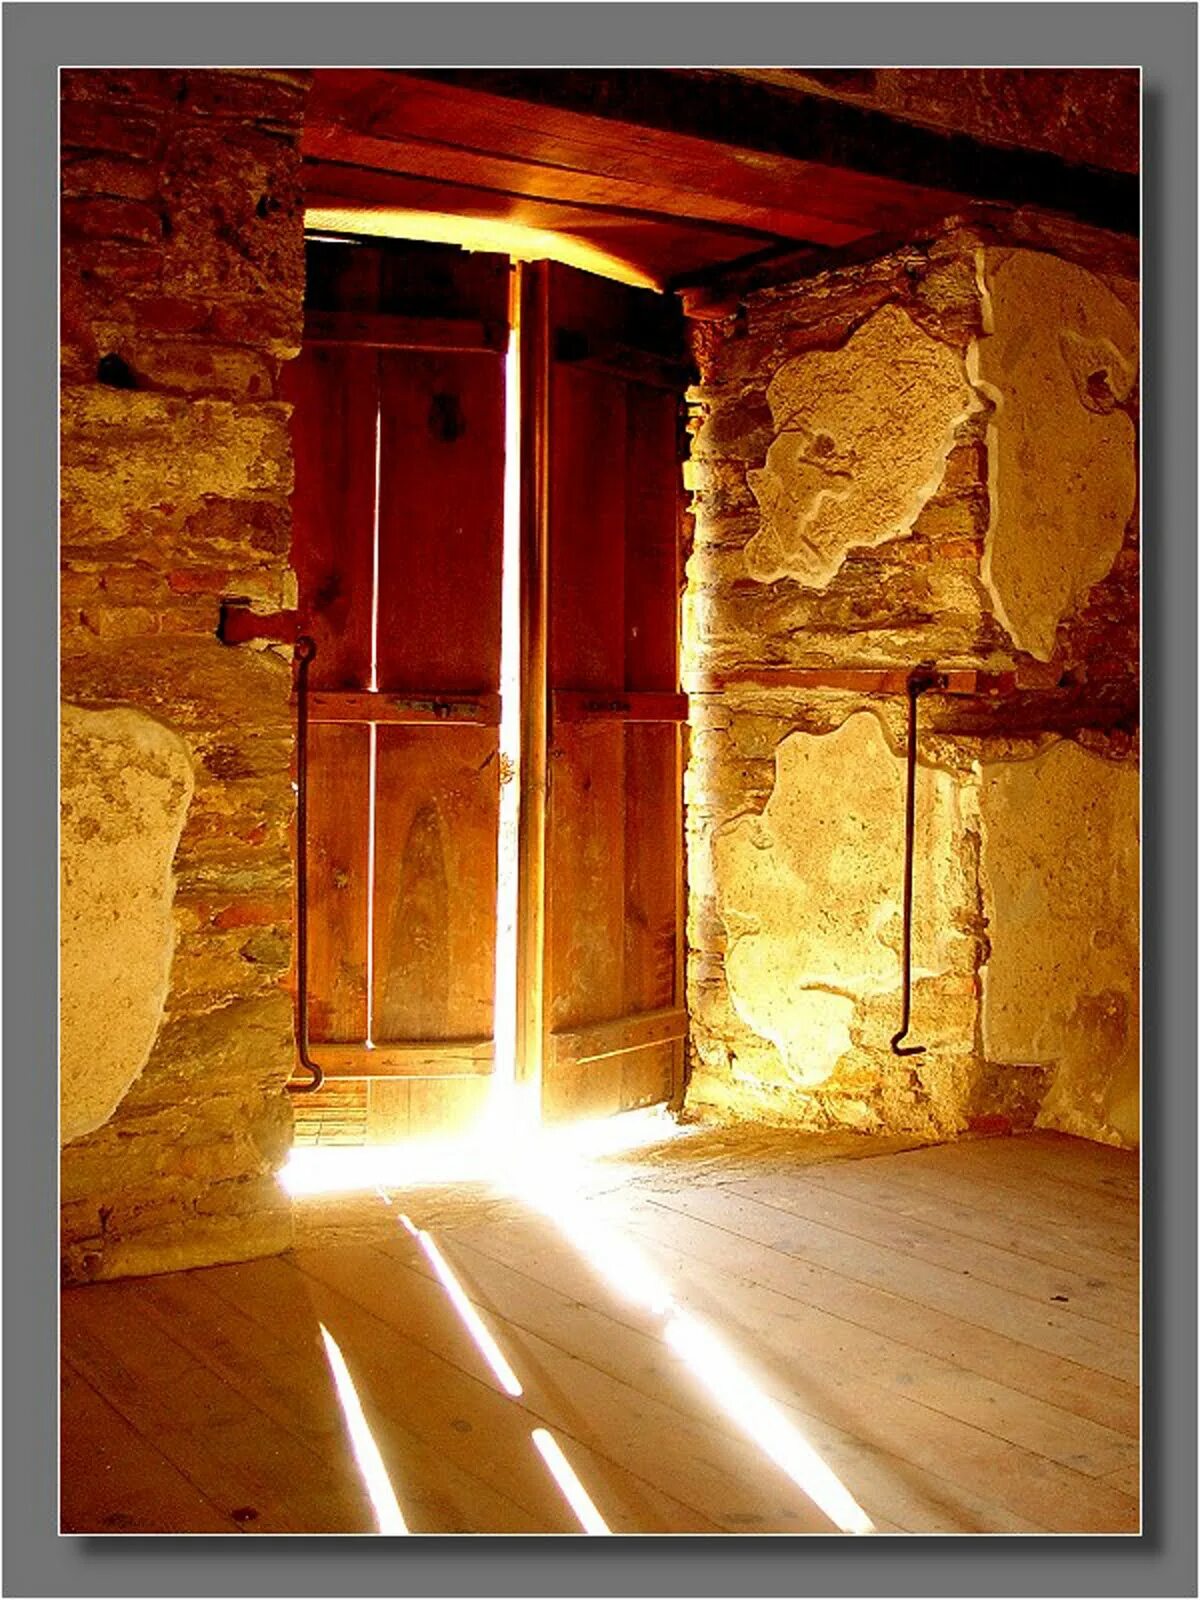 Открой дверь в подземелье. Открытая дверь. Свет из двери. Дверь со светом. Свет из открытой двери.